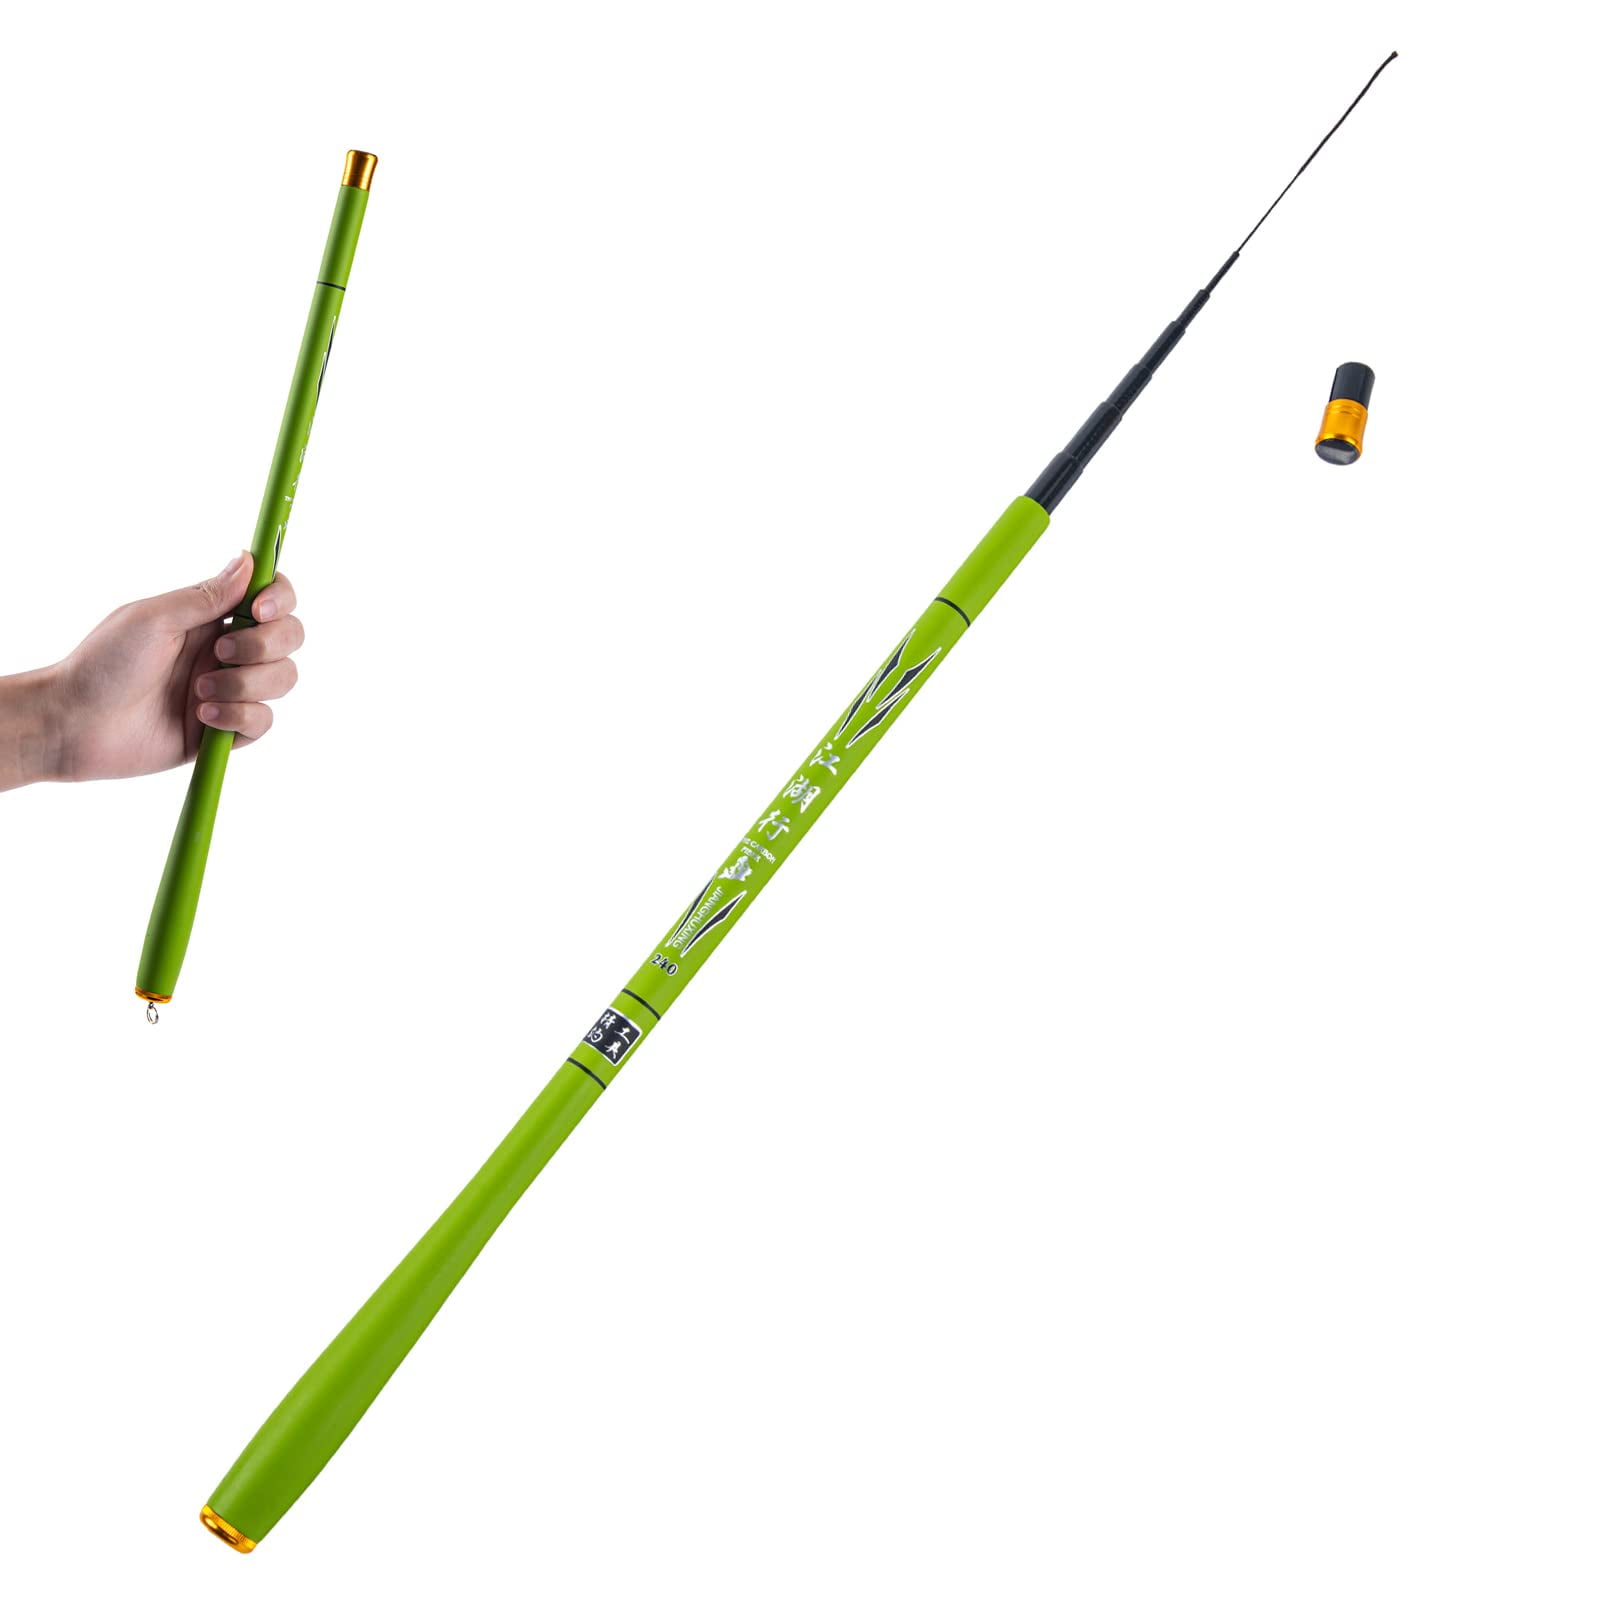 Goture 1.8m-3.6m Telescopic Fishing Rod Carbon Fiber Ultra Light Fishing  Pole Portable Travel Rod Stream Carp Fishing 